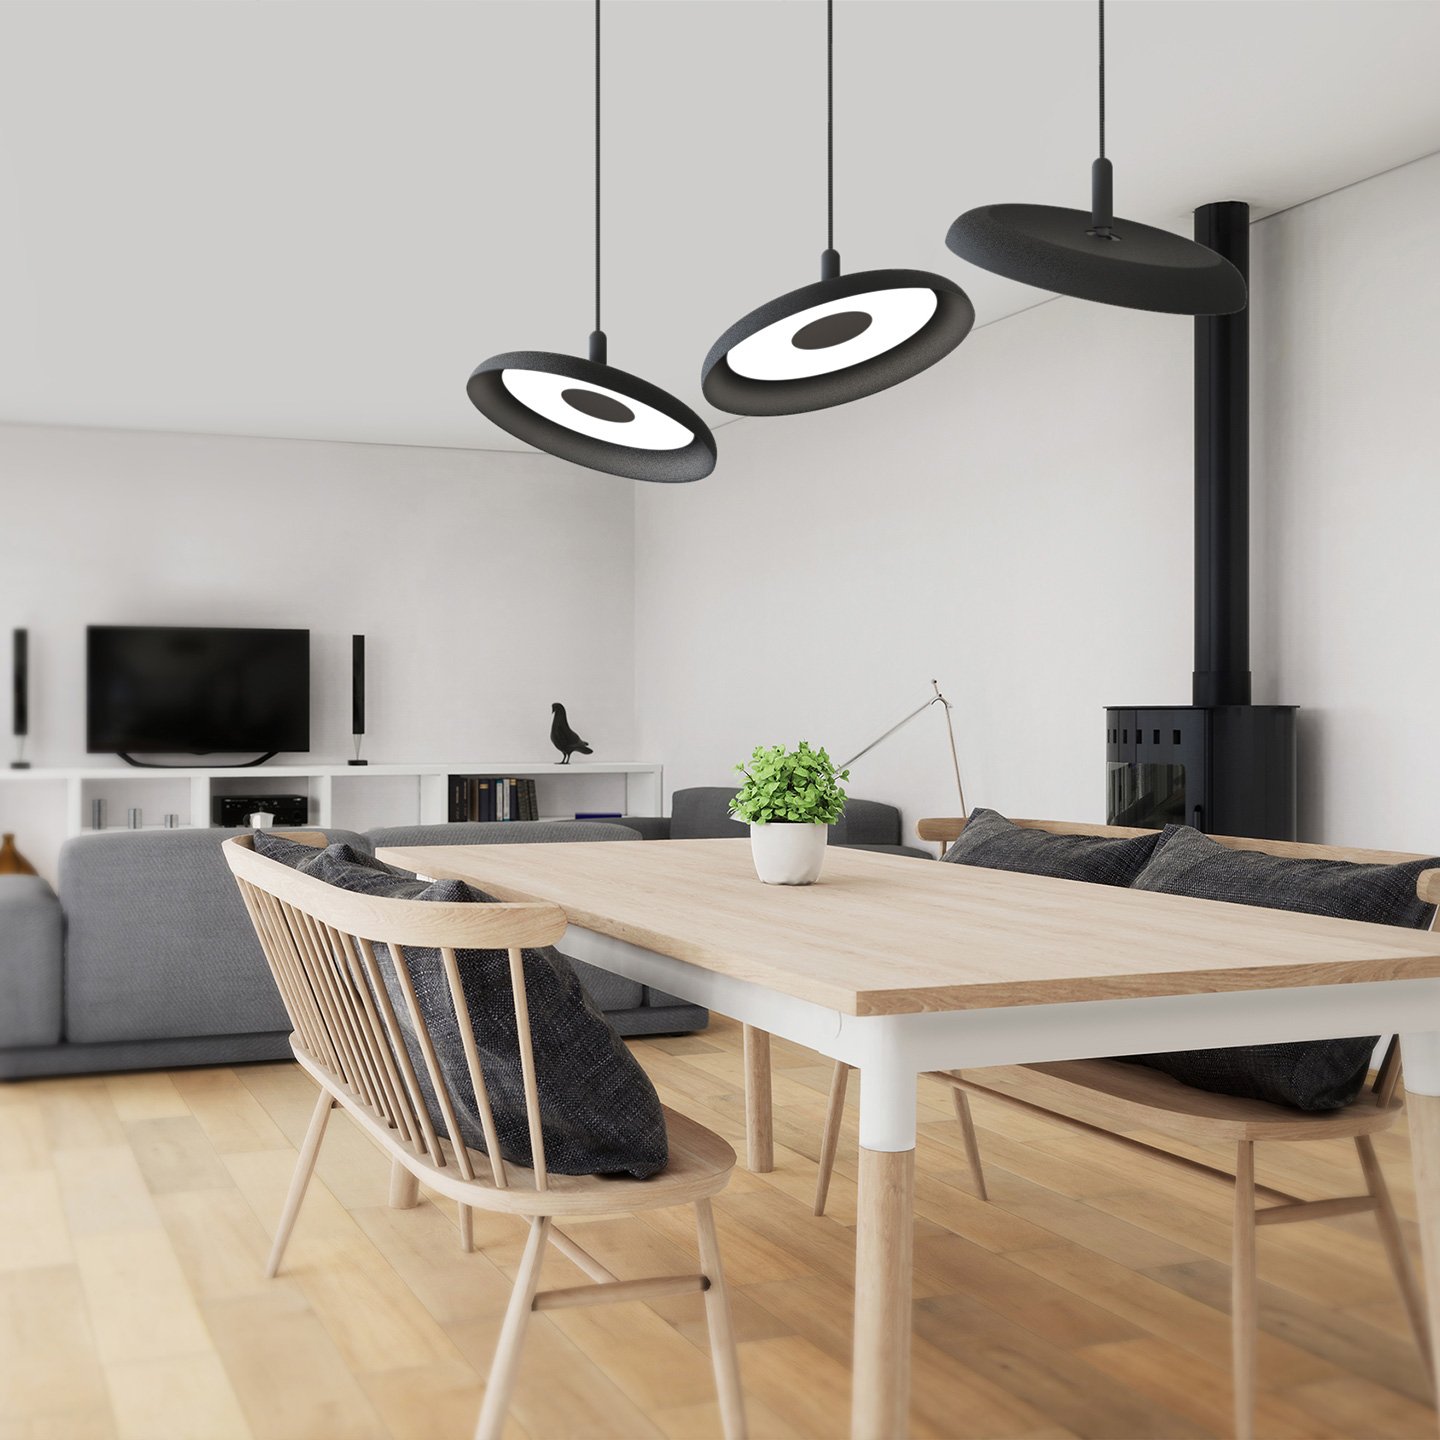 Nivél ist eine LED-Lichtquelle, die eine fließende Lichtgestaltung für jeden Raum ermöcht.